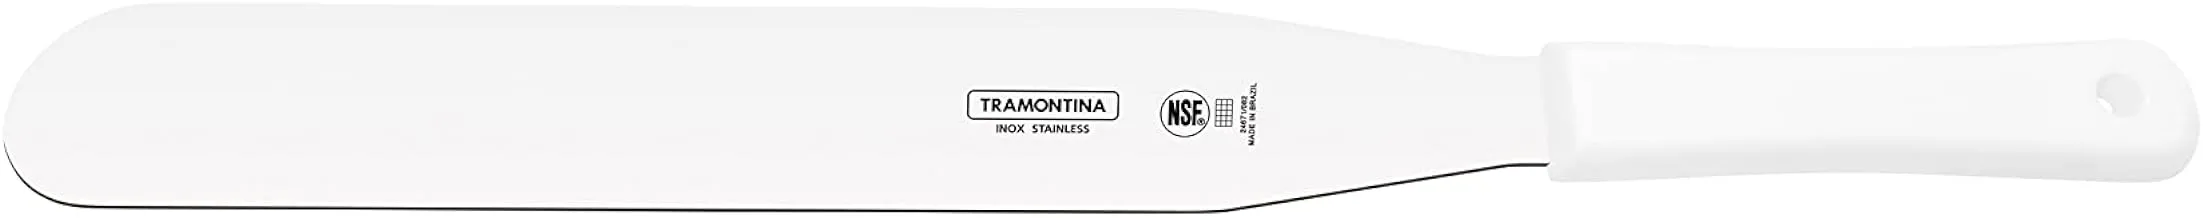 ترامونتينا 14 ملعقة خباز احترافية معتمدة من Nsf ضد الجراثيم